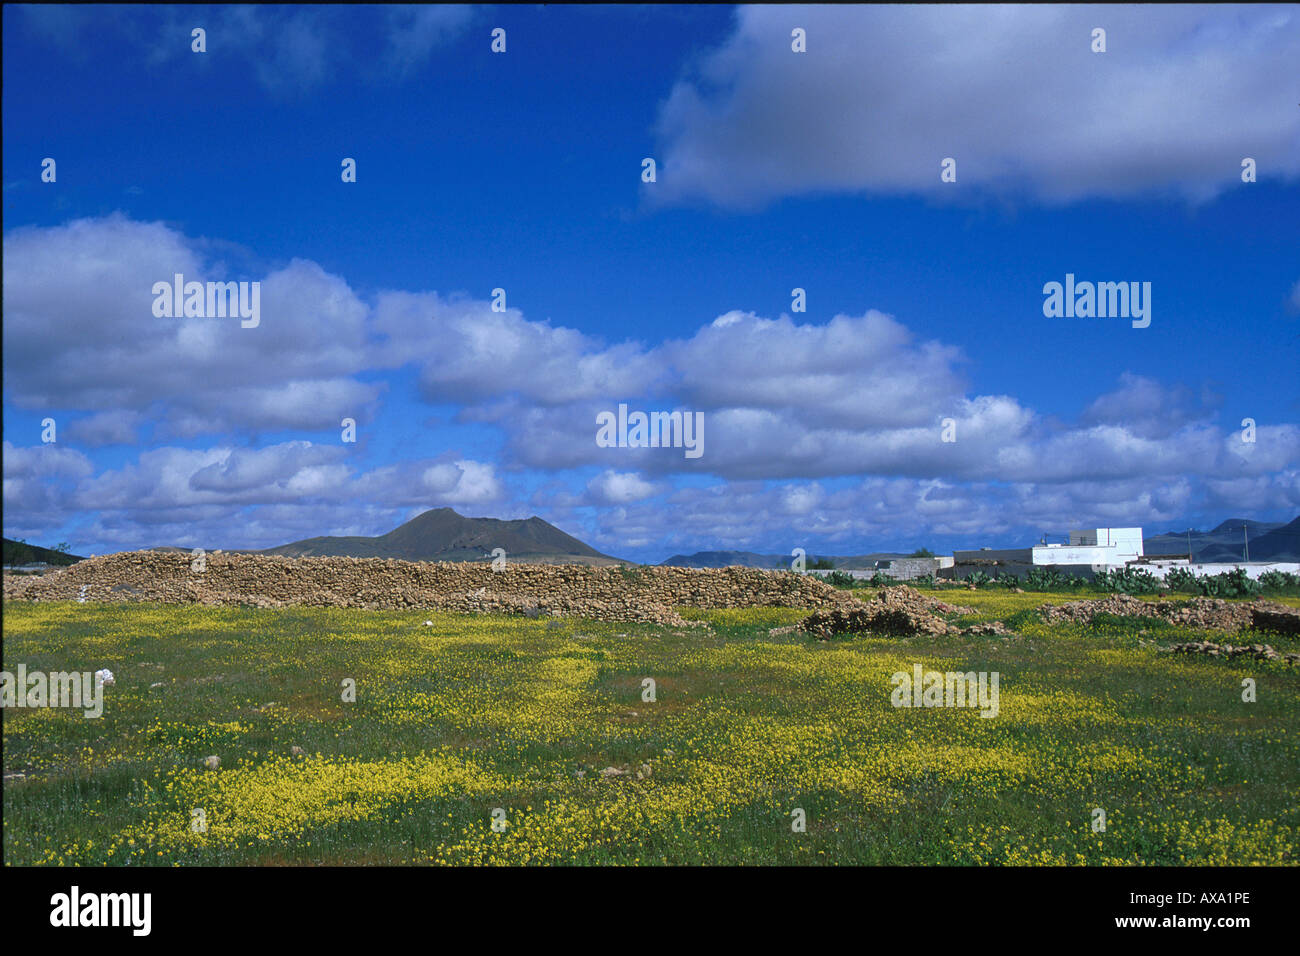 Blumenwiese, Vulkan bei Tuineje, Fuerteventura, Kanarische Inseln Spanien, Europa Stock Photo